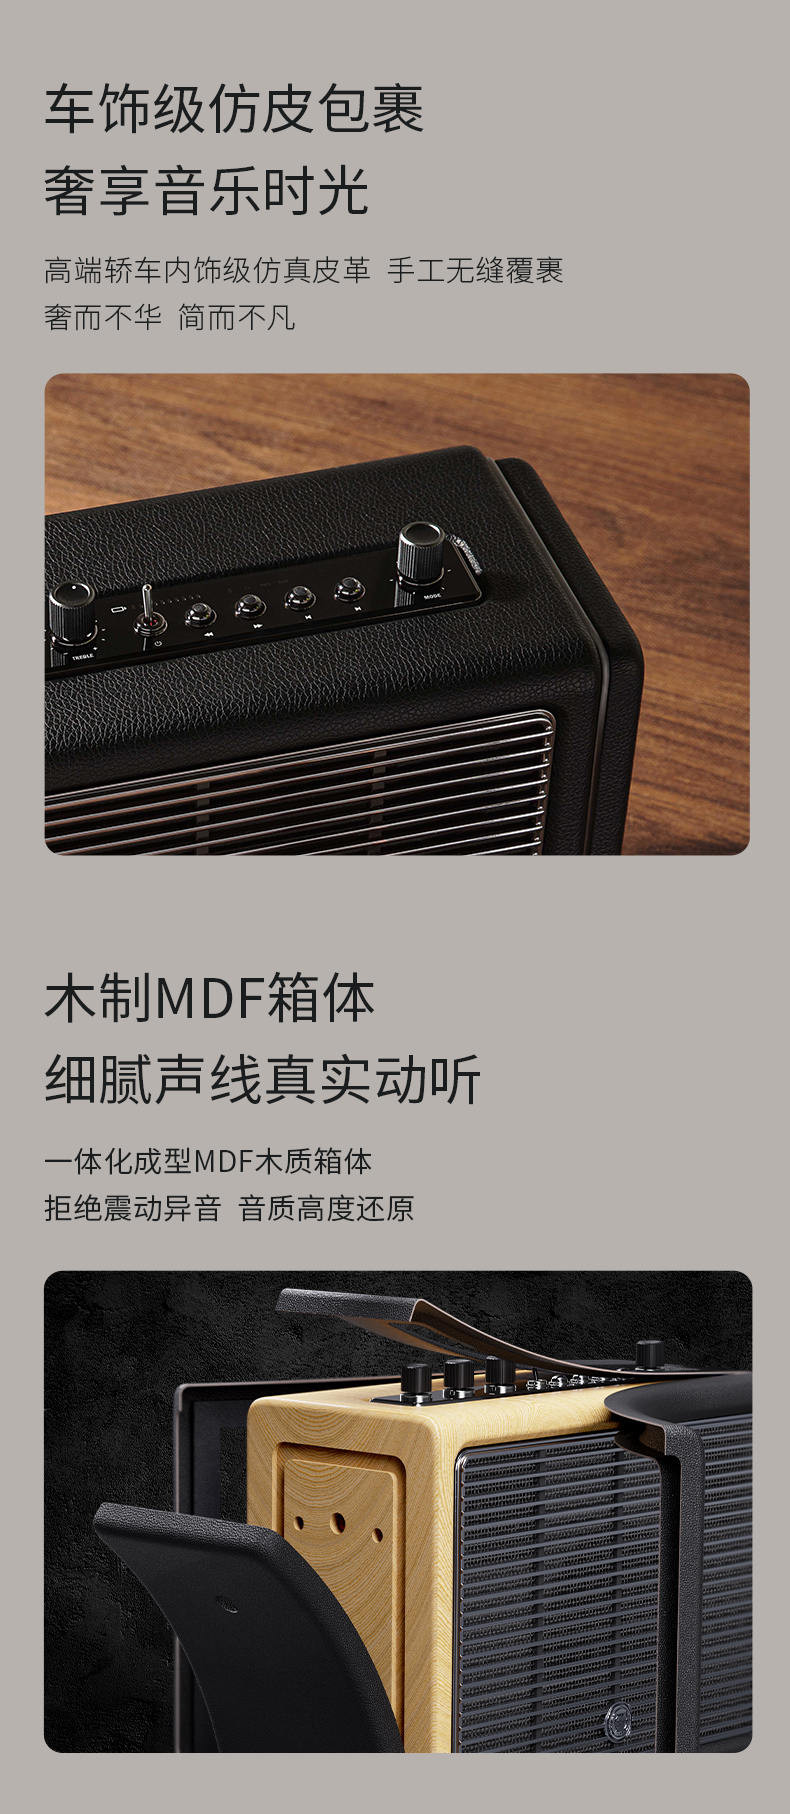 猫王（MAO KING） 音响 Mate4 MW-M4 便携式无线蓝牙音箱